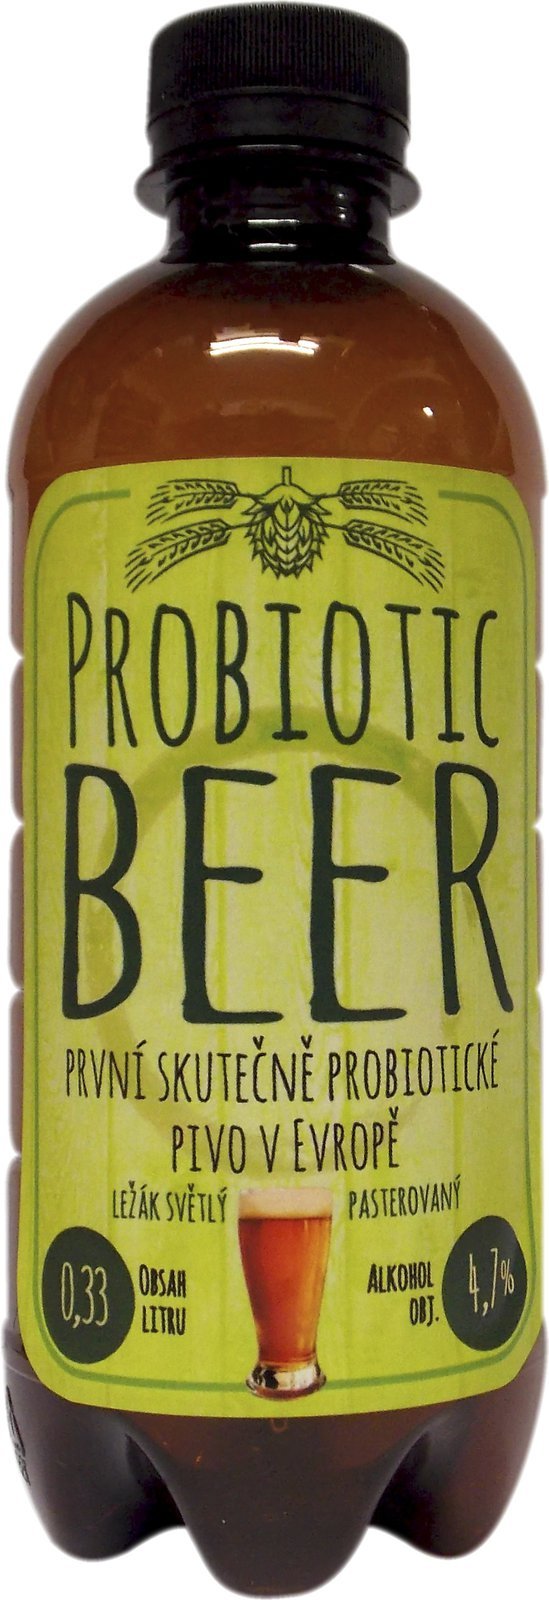 Češi uvařili první probiotické pivo v Evropě. Má posílit imunitu, bude pomáhat při průjmech nebo po ukončení antibiotické léčby.